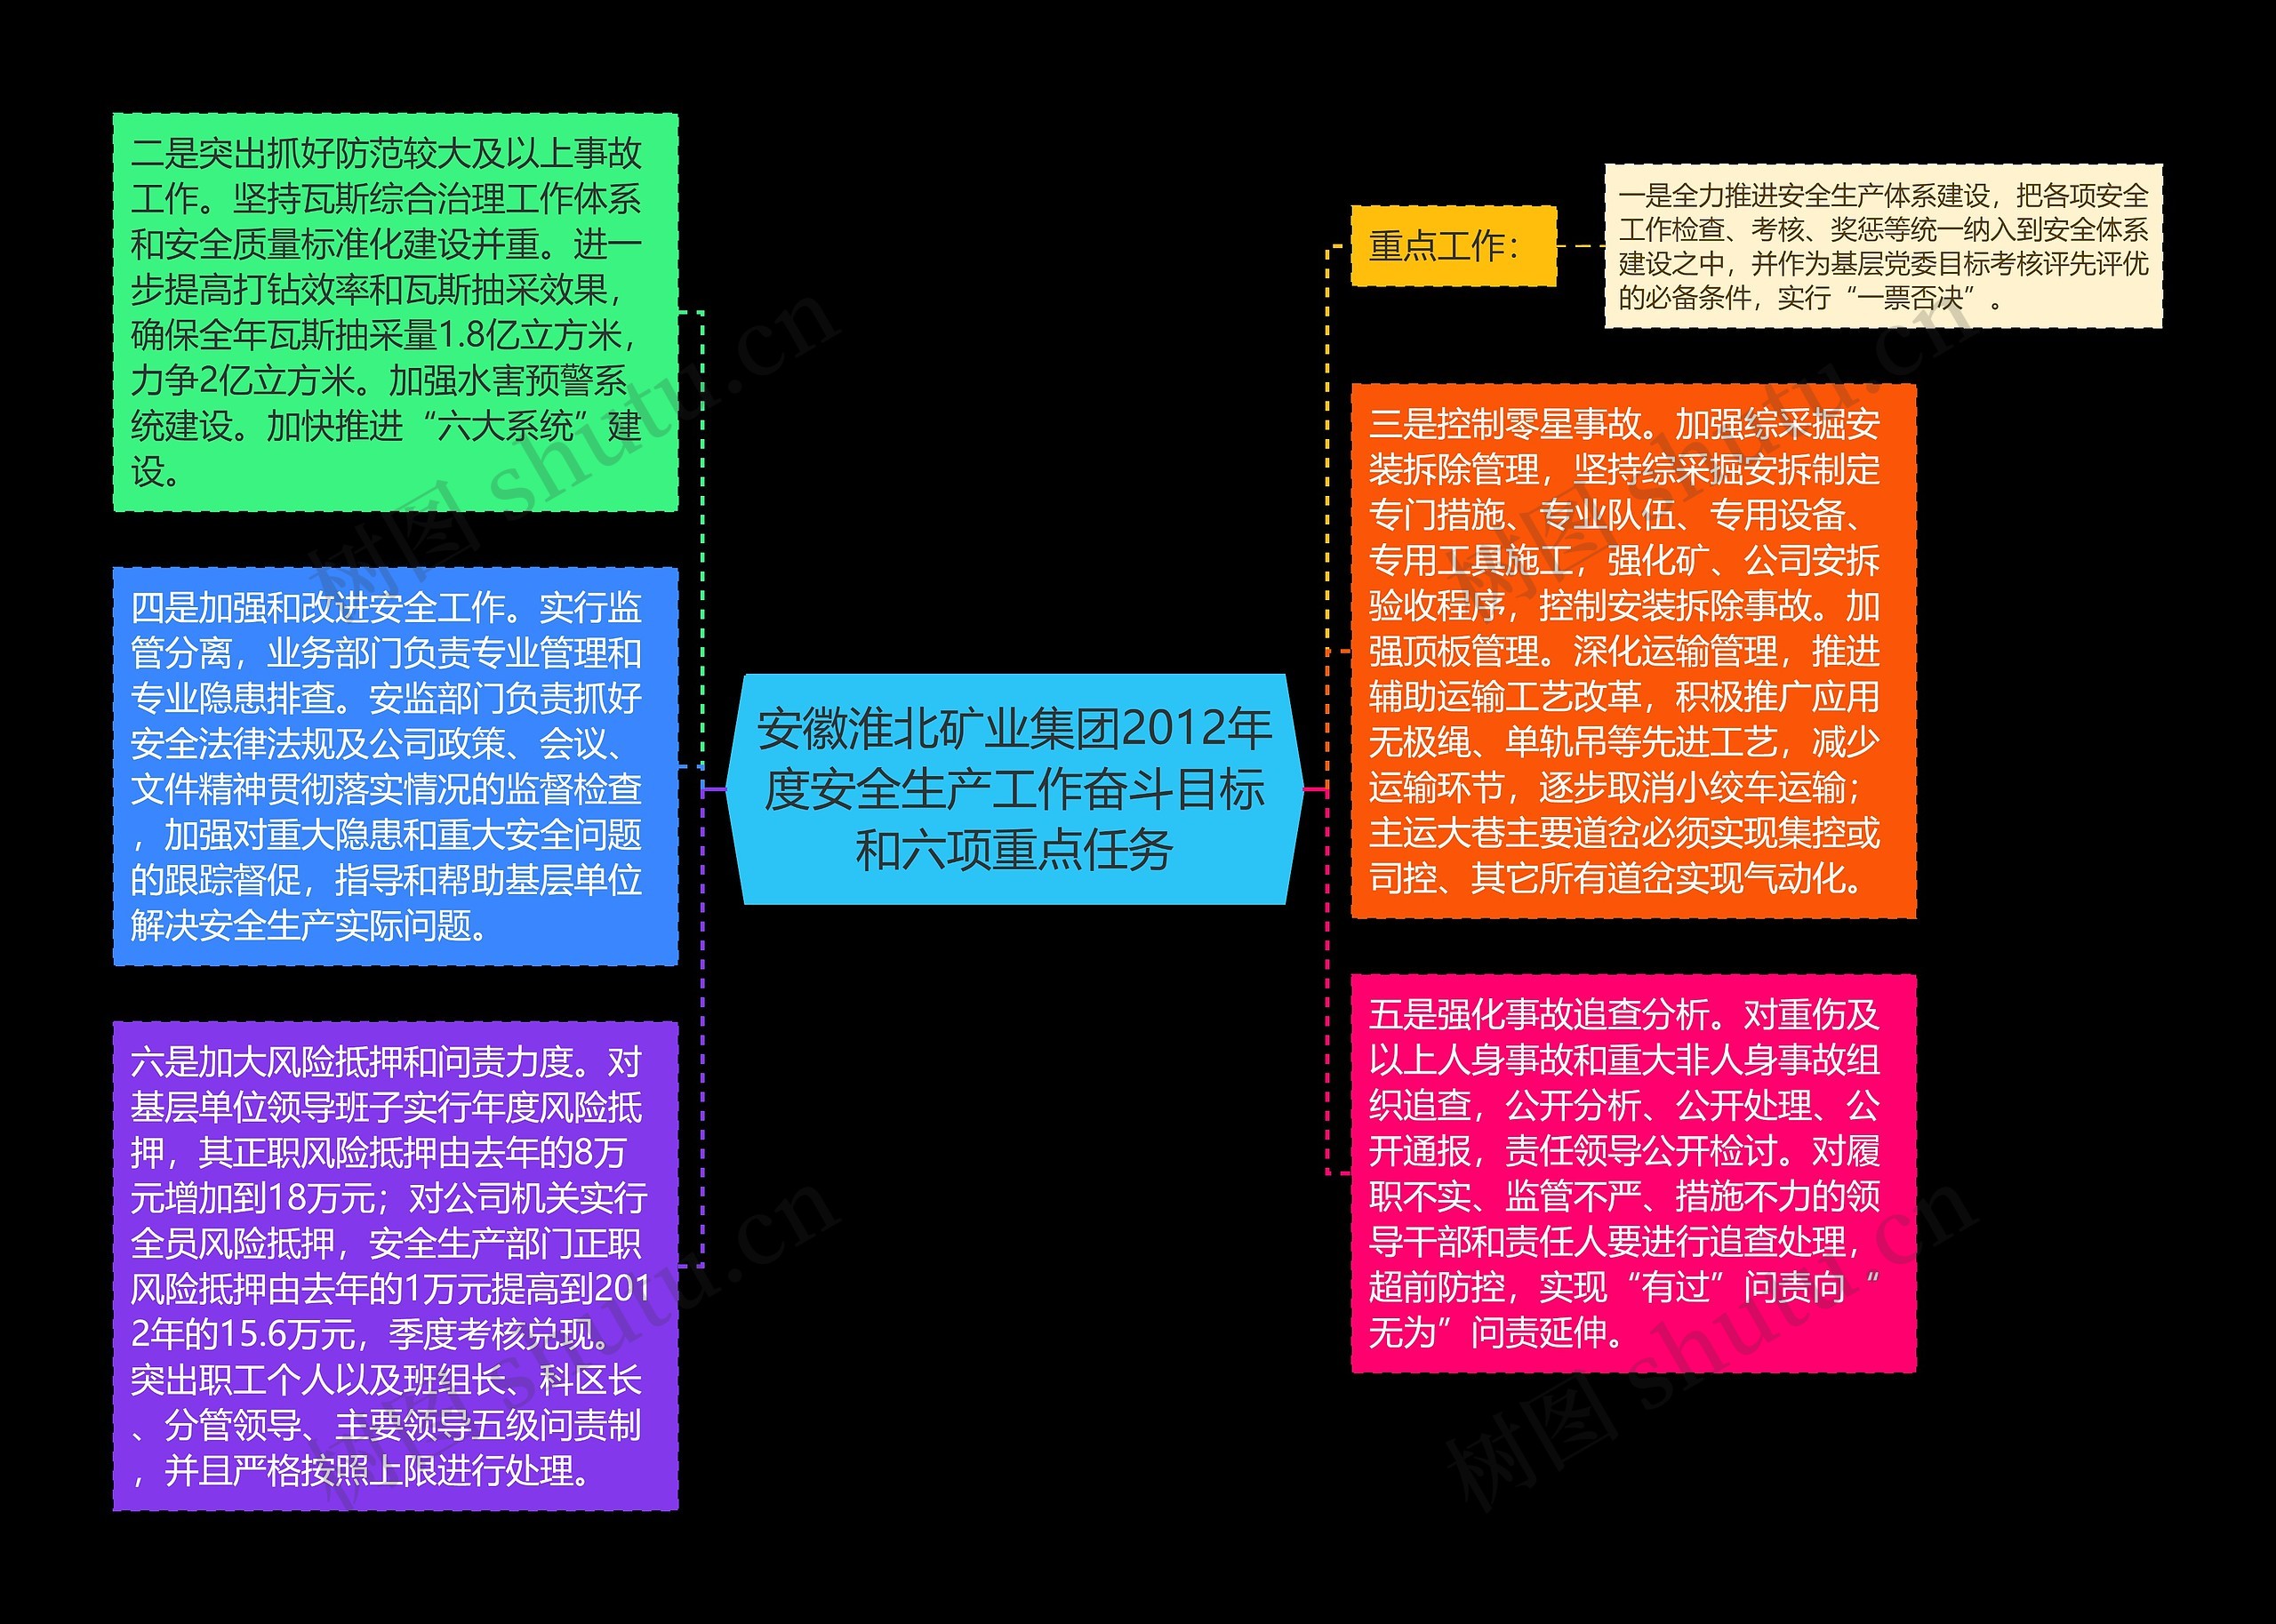 安徽淮北矿业集团2012年度安全生产工作奋斗目标和六项重点任务思维导图